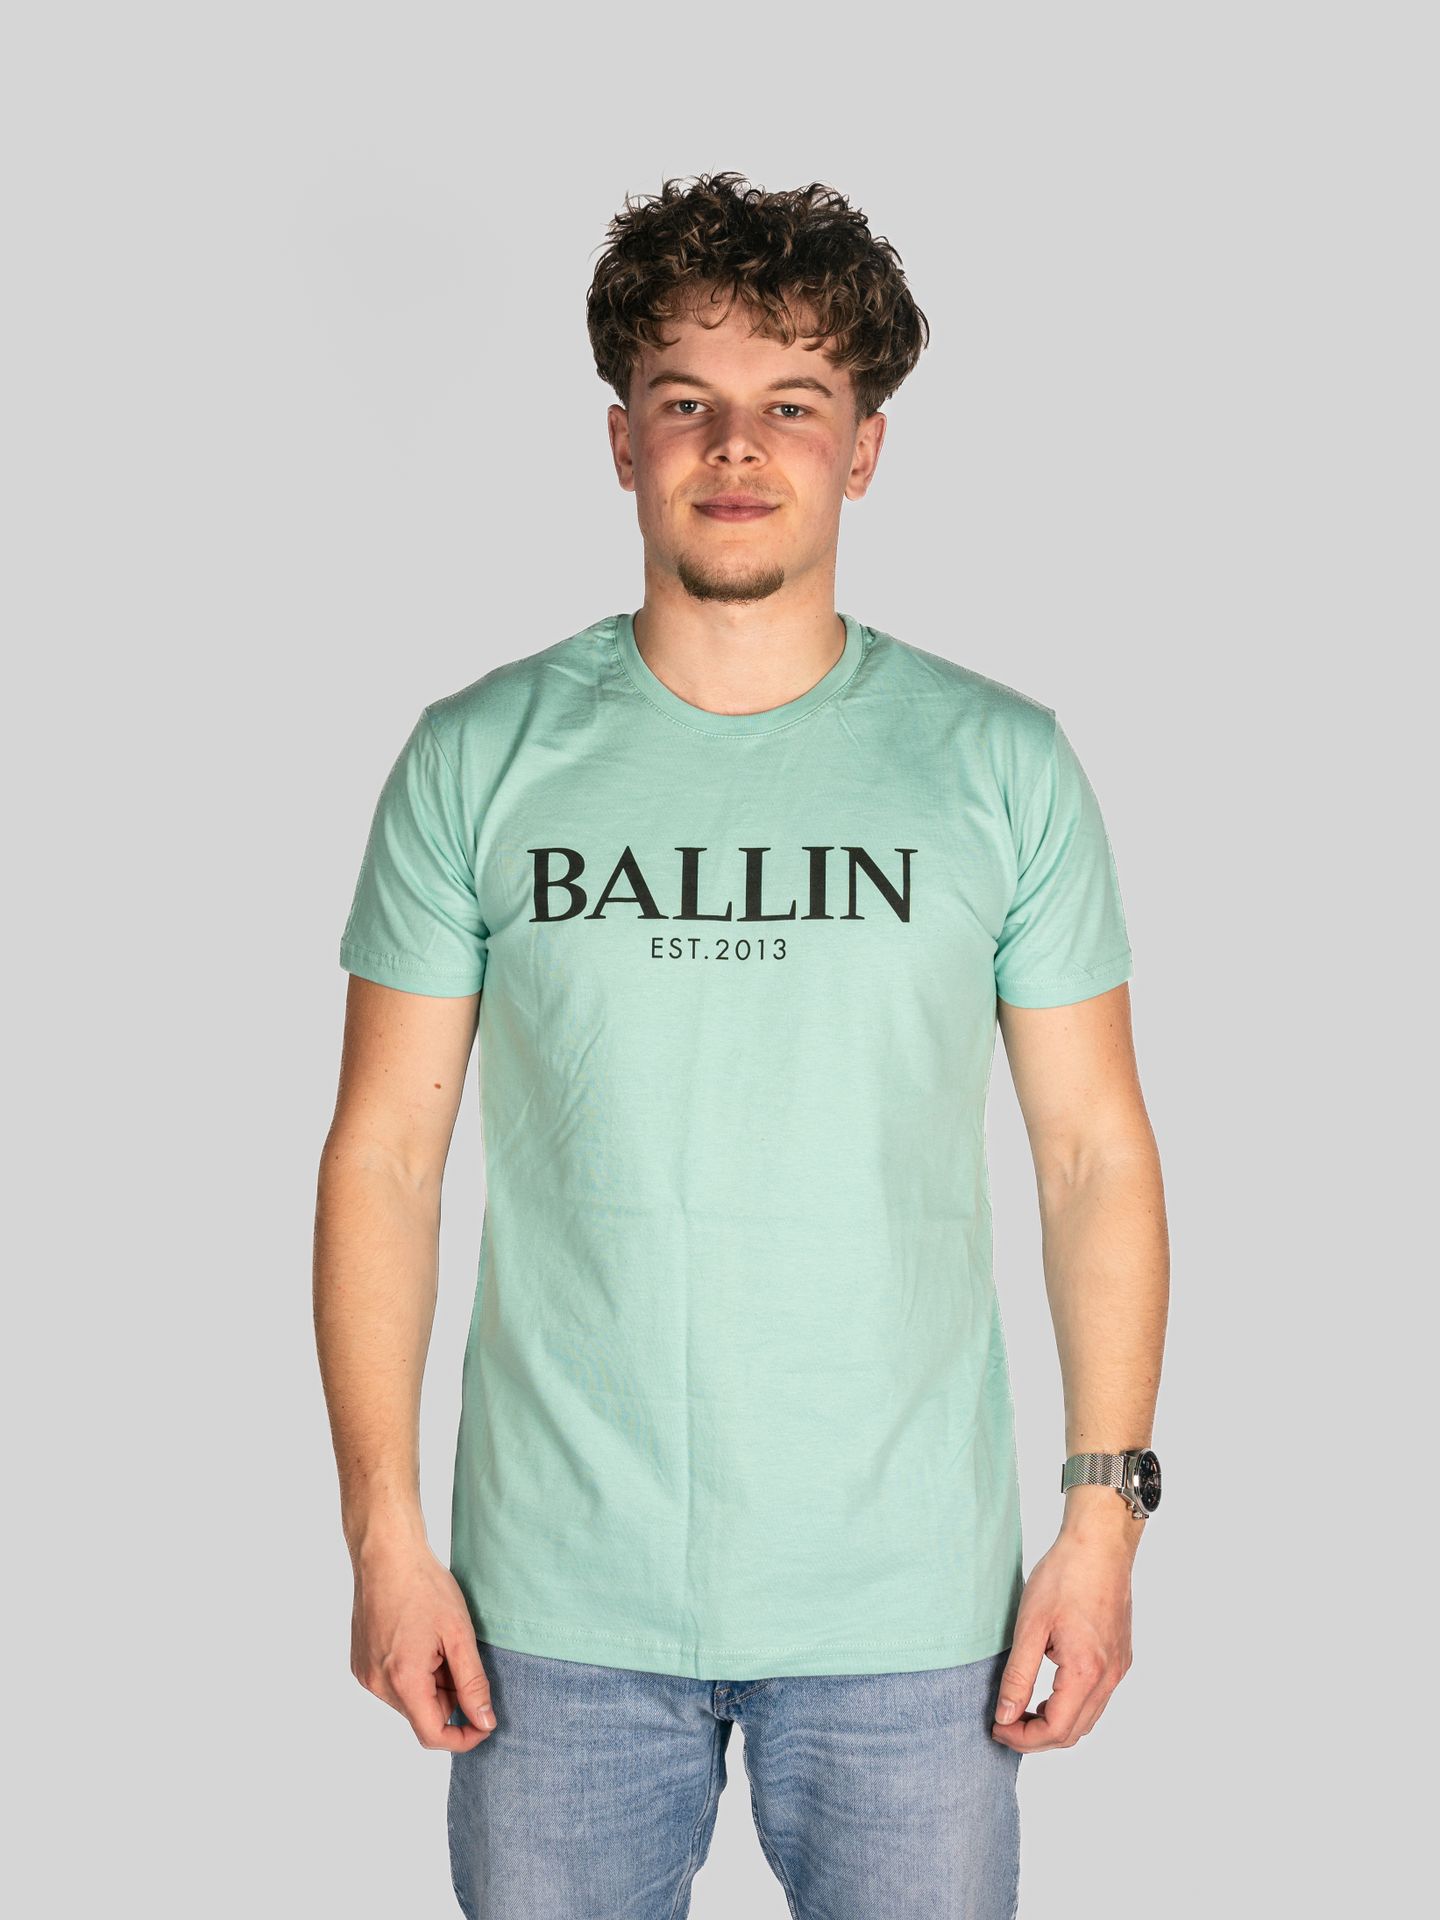 Ballin Basic Tee Mint 2900147726079